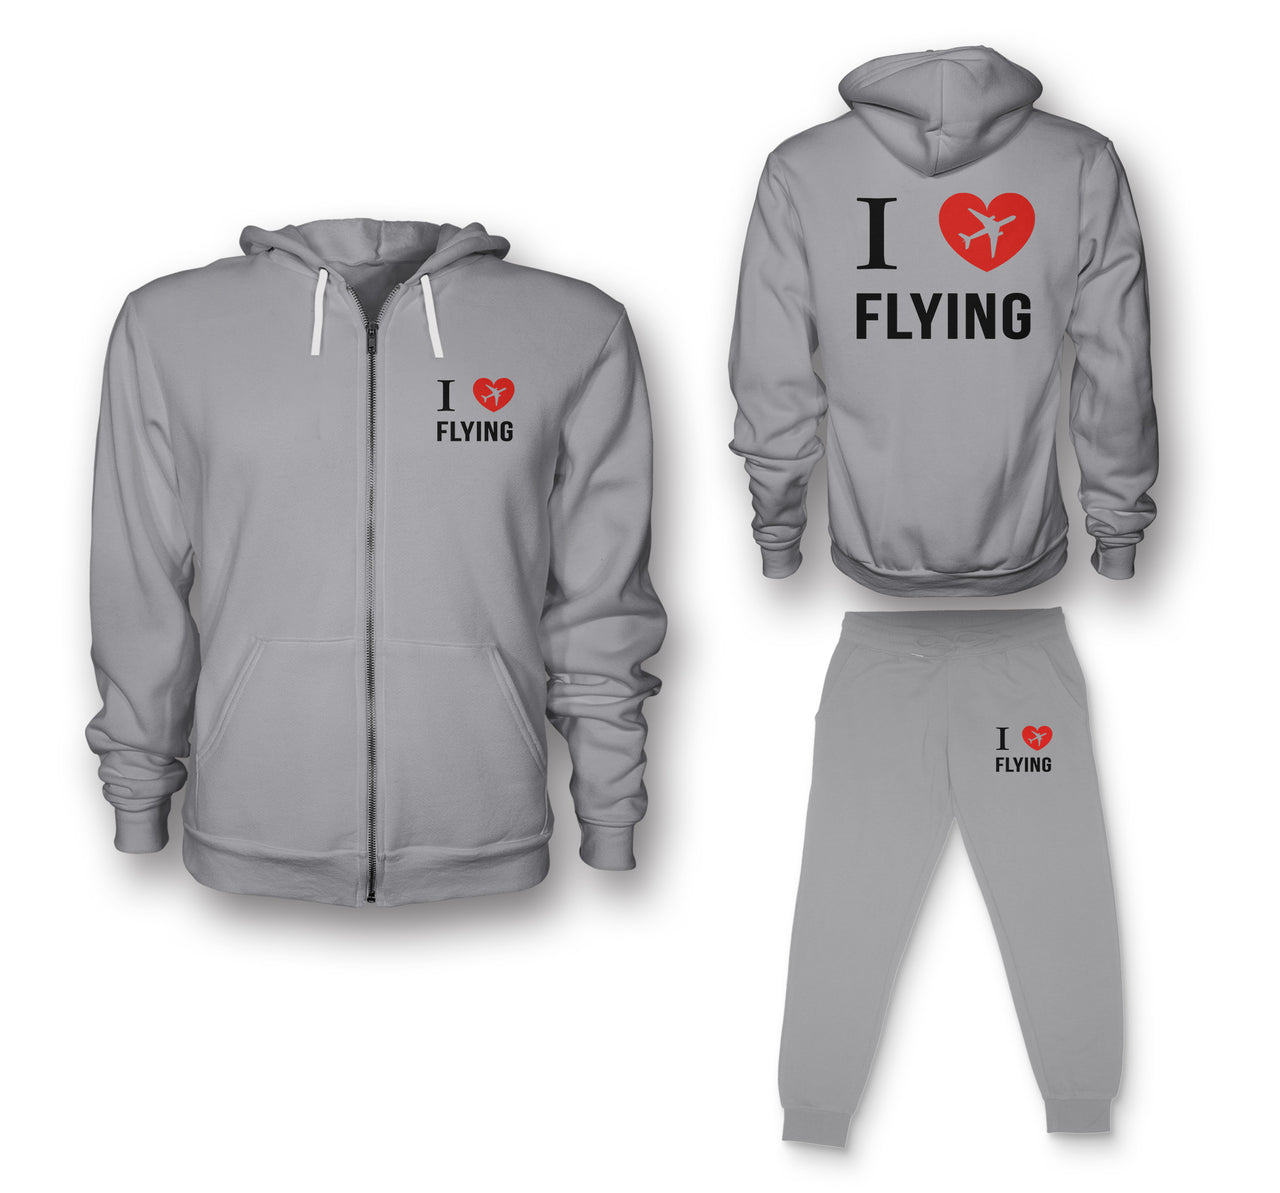 I Love Flying Designed Zipped Hoodies & Sweatpants Set